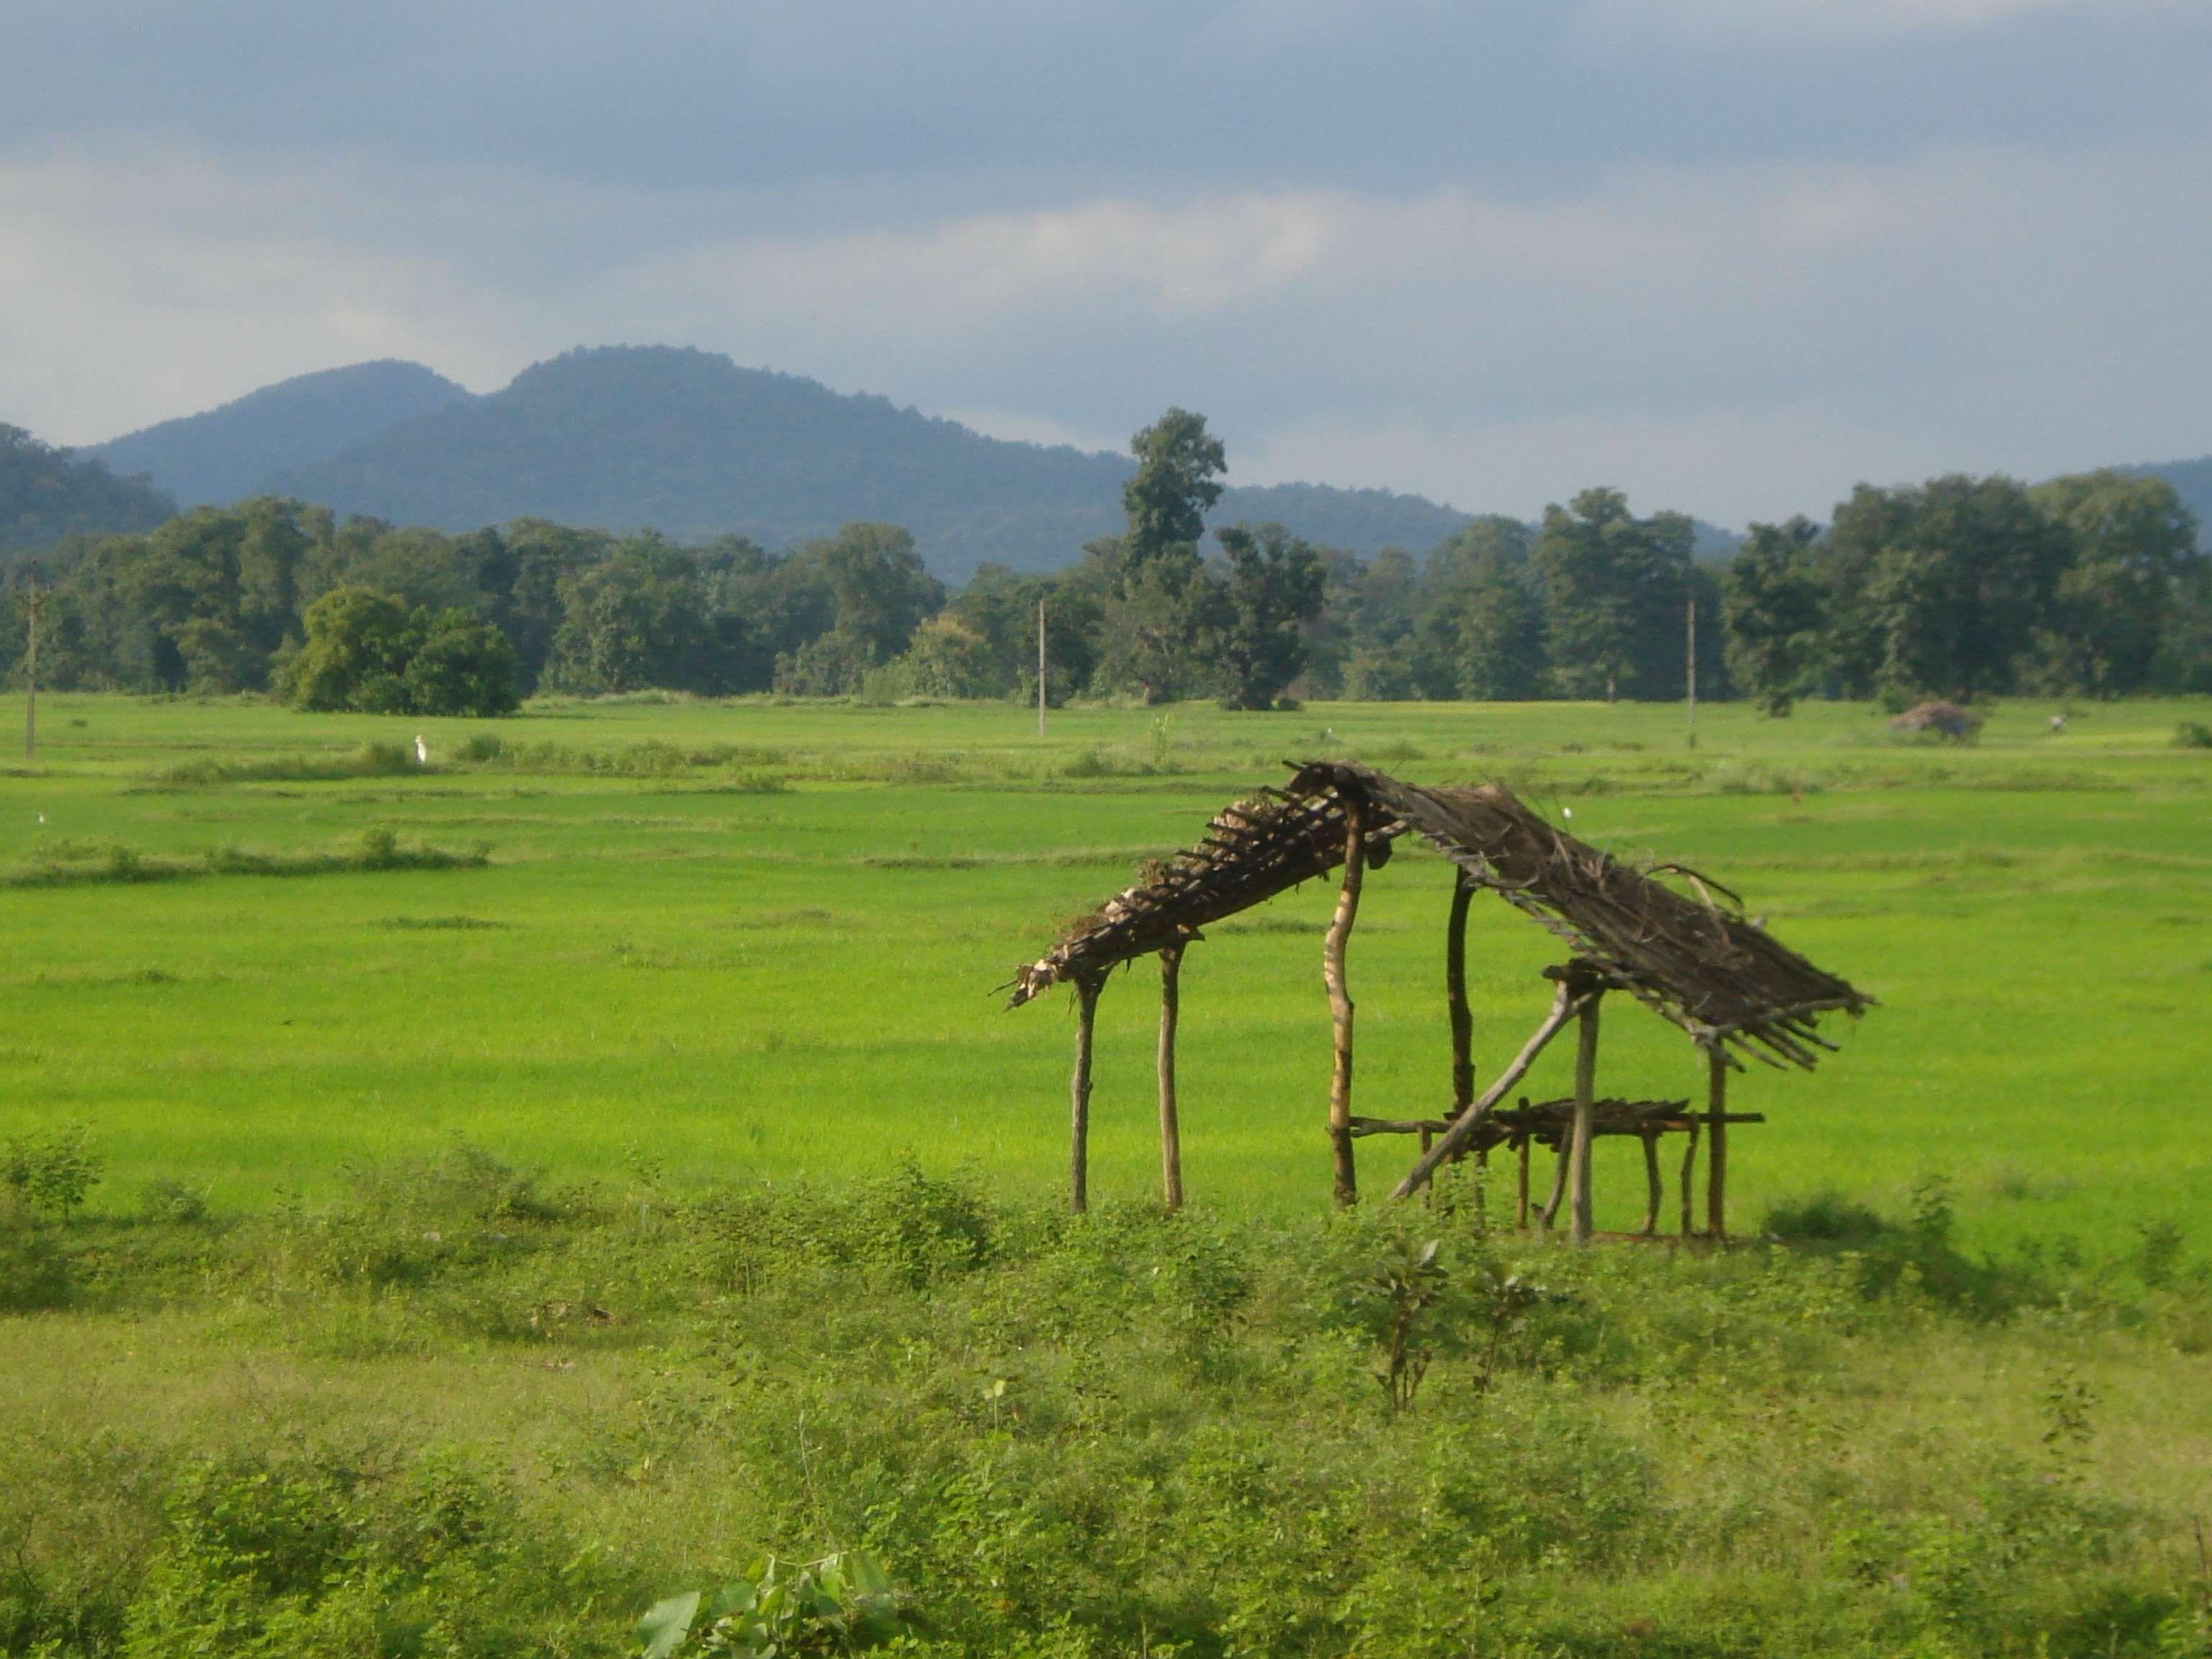 3072x2304 nông nghiệp # nông nghiệp # cánh đồng # nông trại # người Ấn Độ # túp lều của người Ấn Độ # làng người Ấn Độ